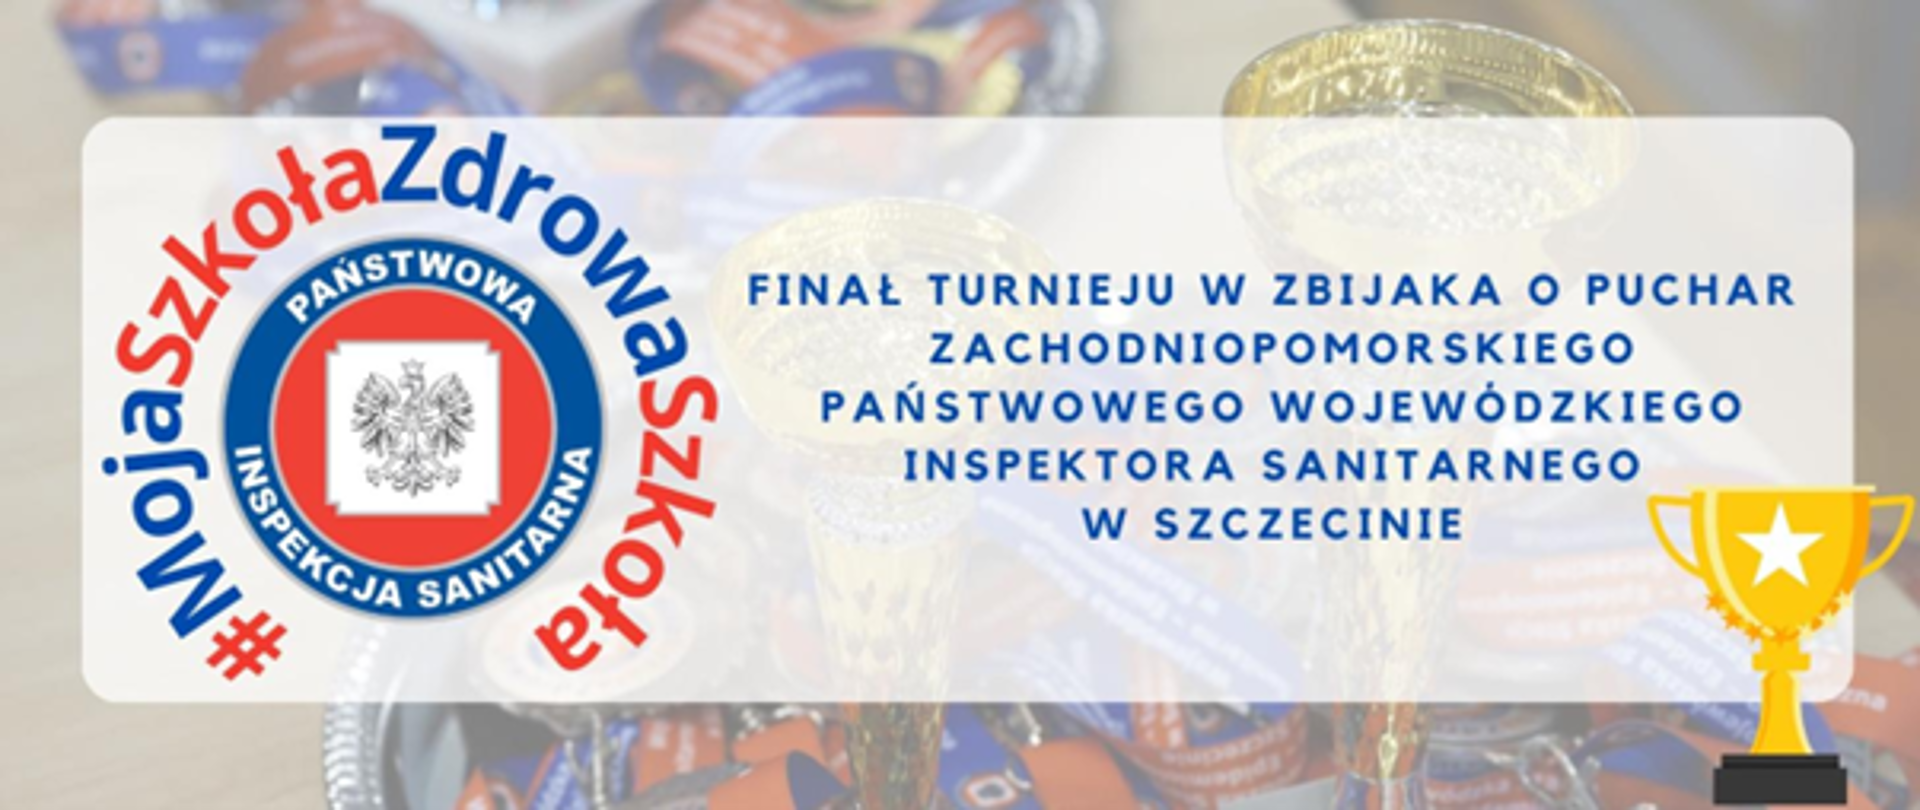 Finał turnieju w zbijaka o puchar Zachodniopomorskiego Państwowego Wojewódzkiego Inspektora Sanitarnego w Szczecinie 